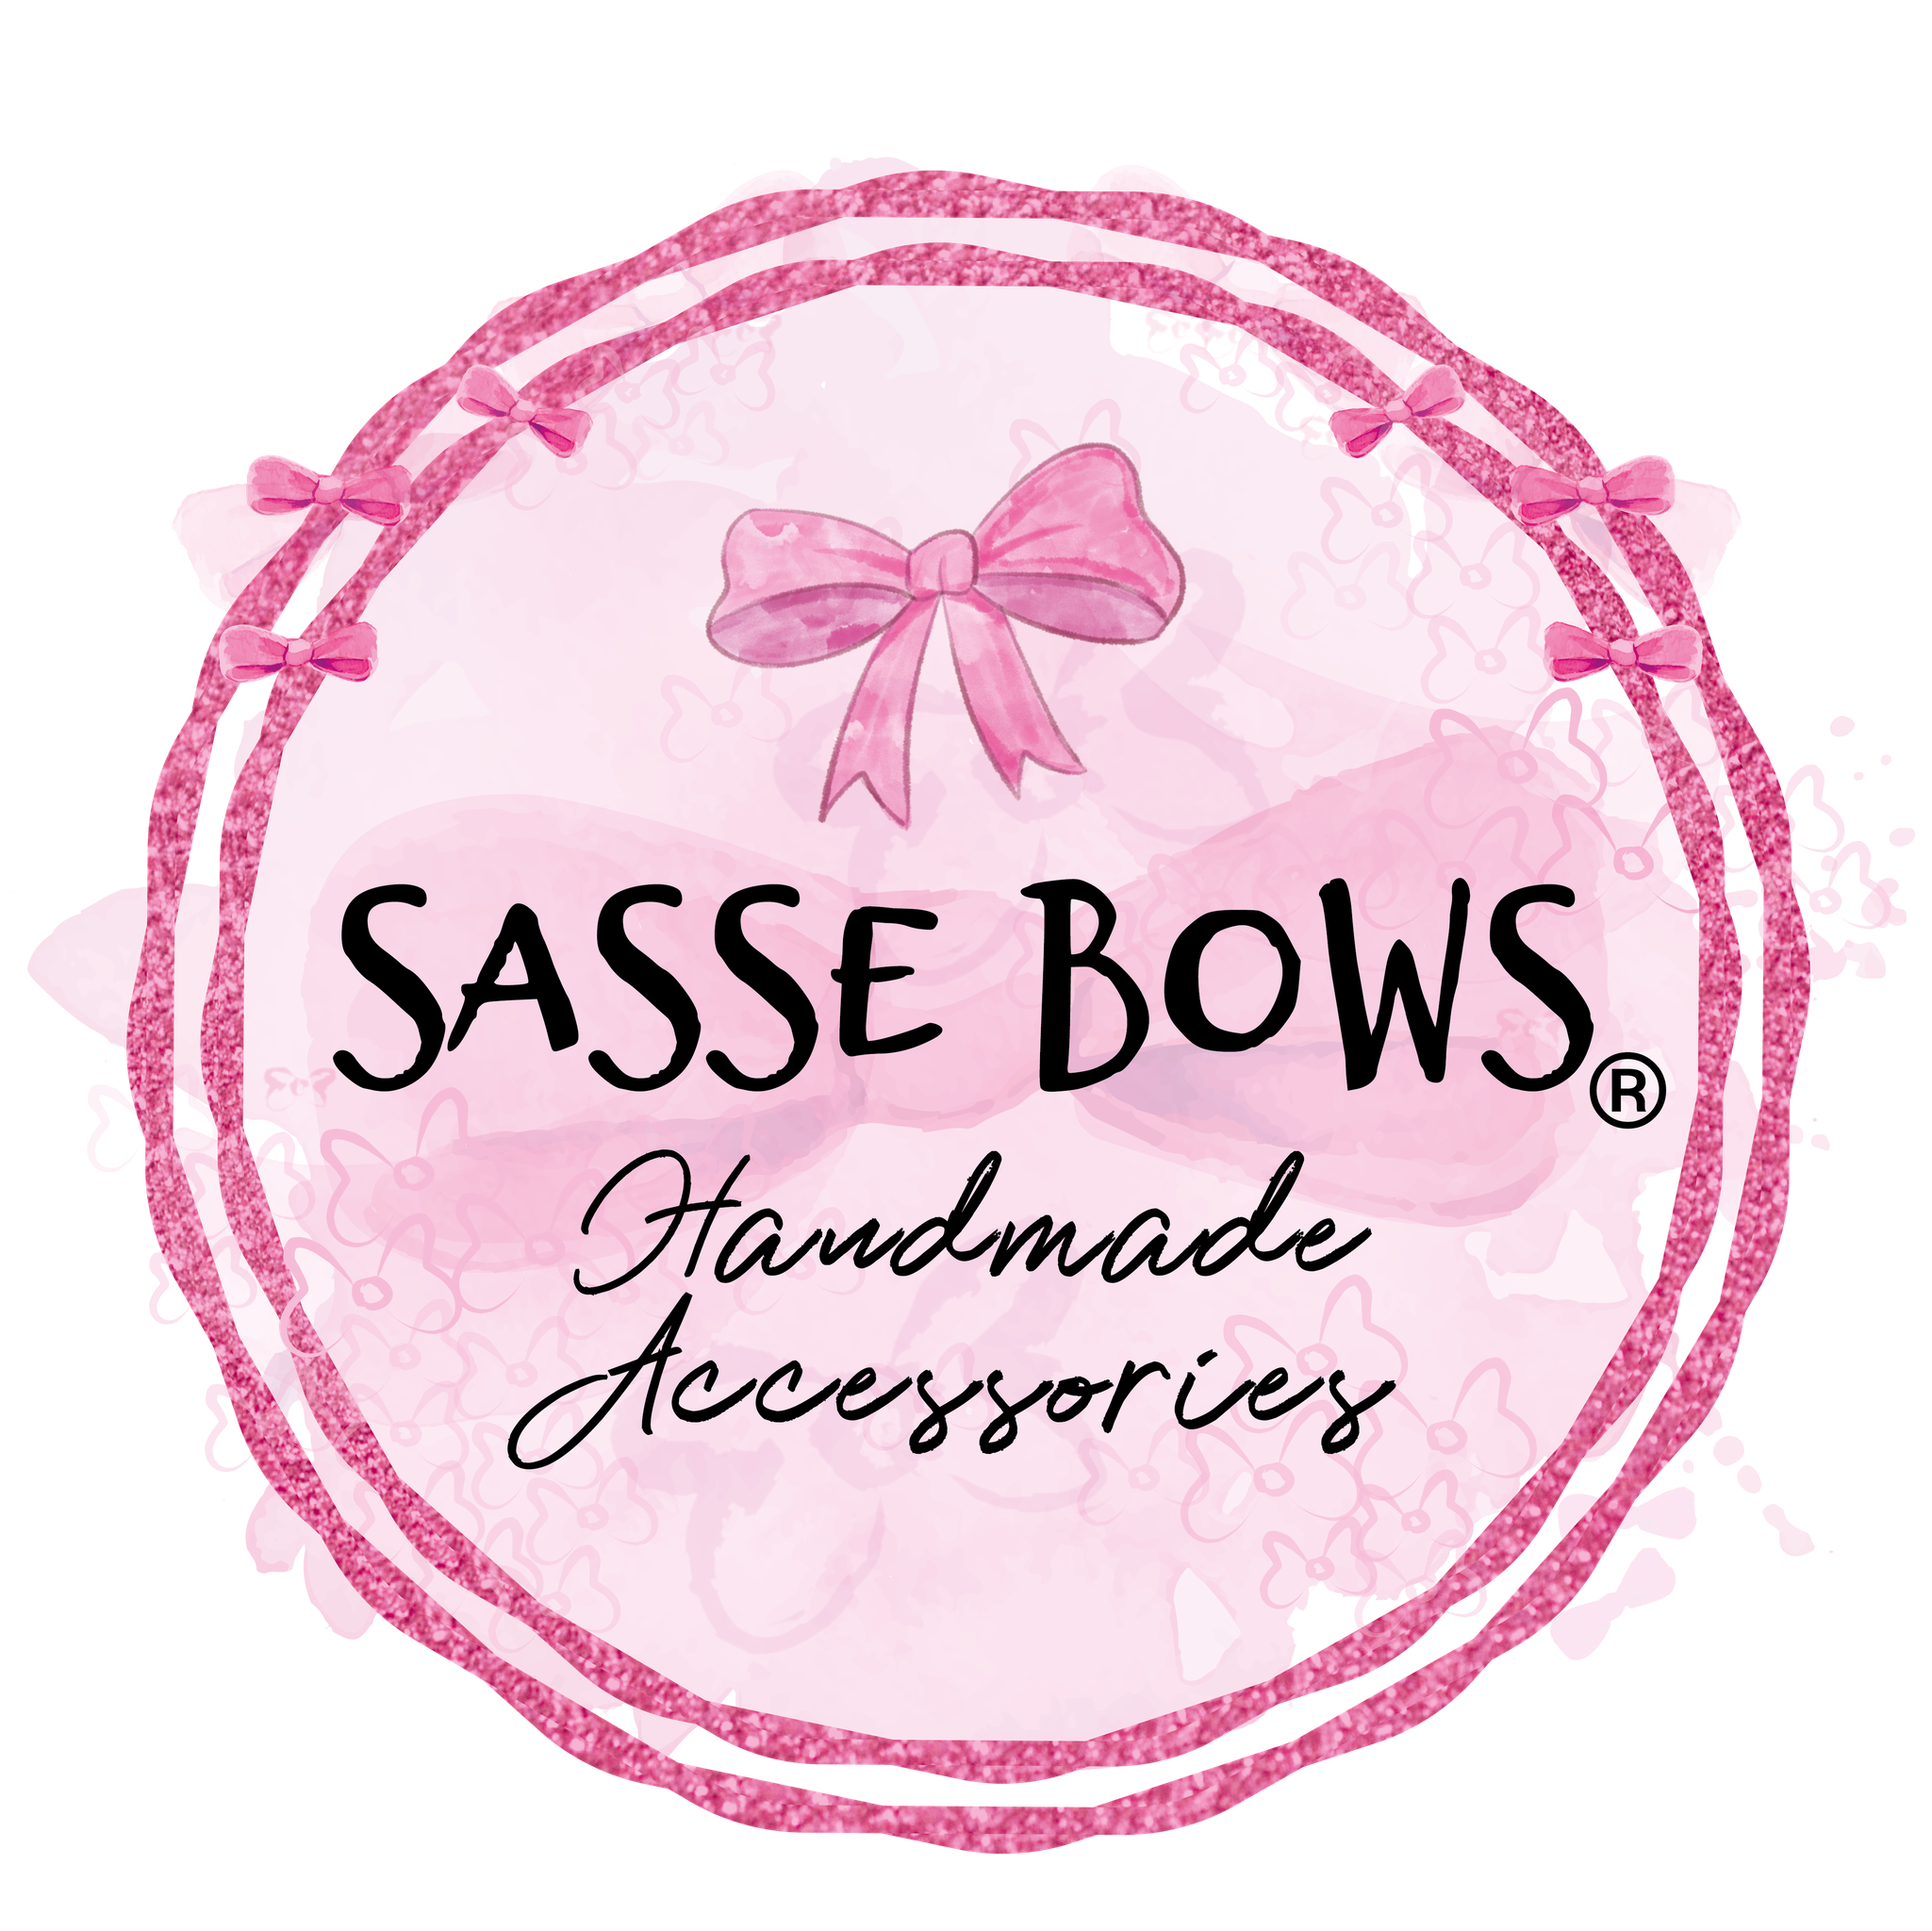 Sasse Bows